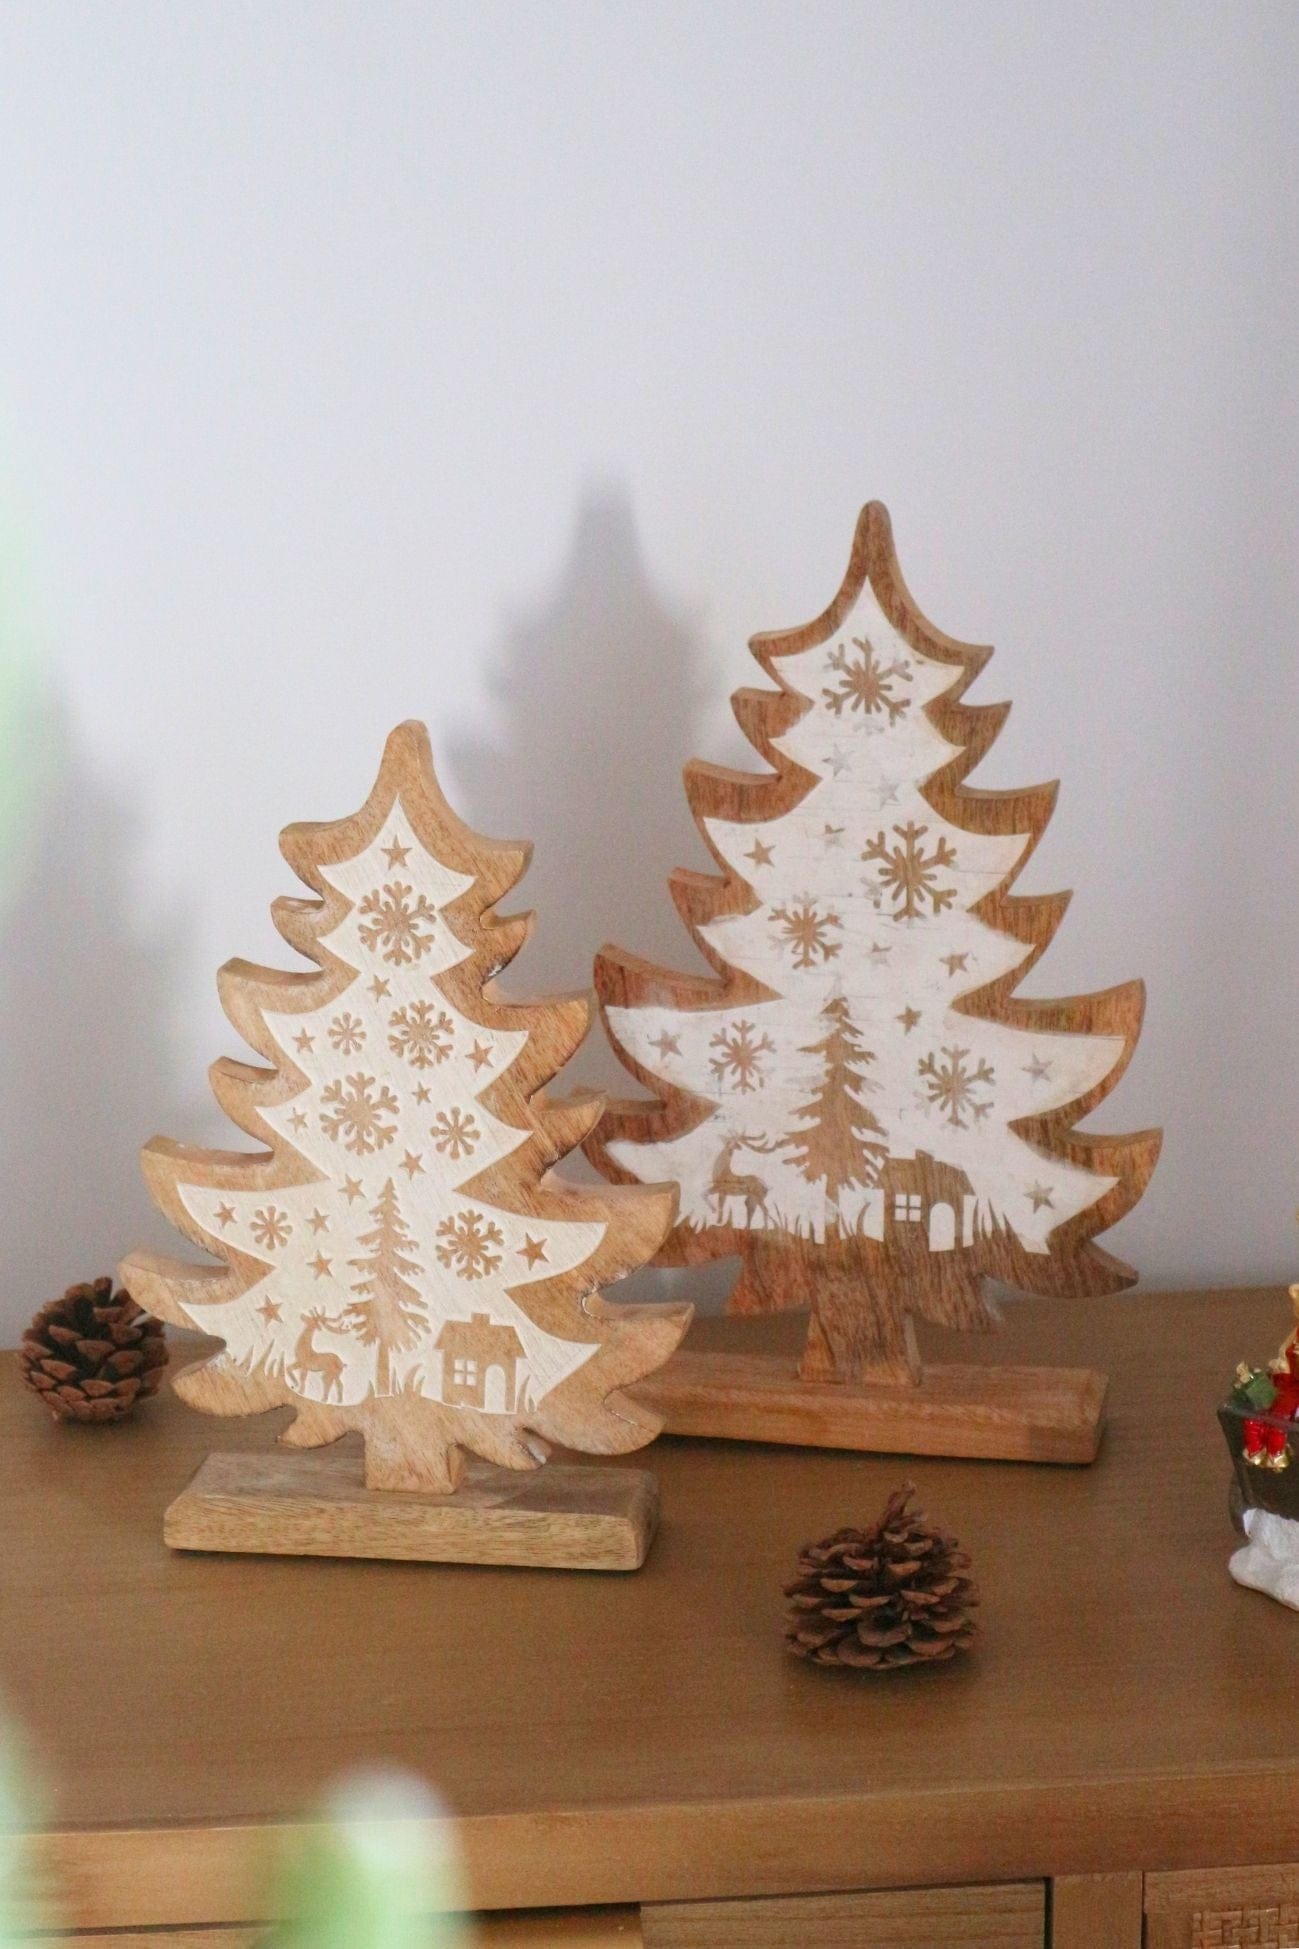 Blanc MariClo' Storie di Cantastorie Storie di Cantastorie - Alberello natalizio in legno | Blanc MariClo'